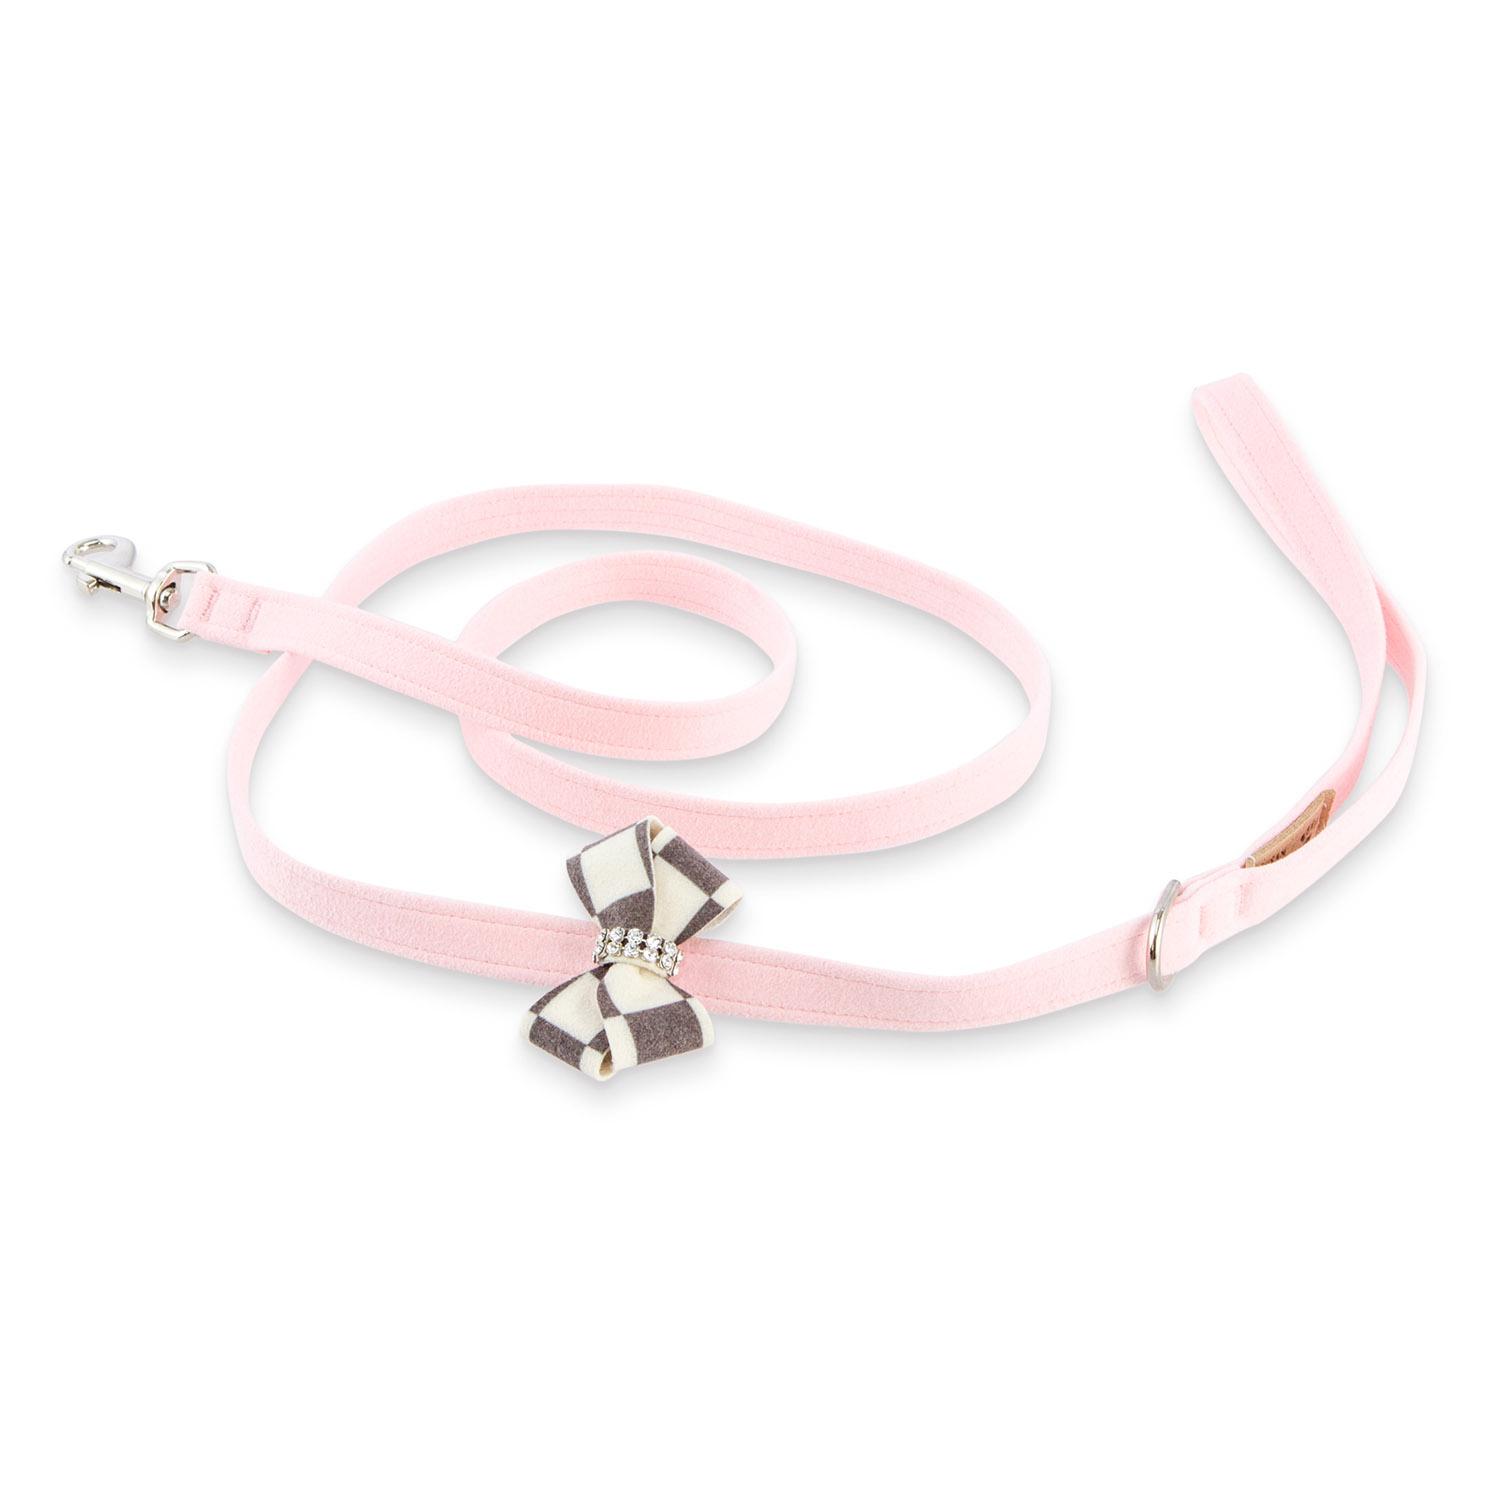 Susan Lanci Windsor Check Nouveau Bow Dog Leash - Puppy Pink